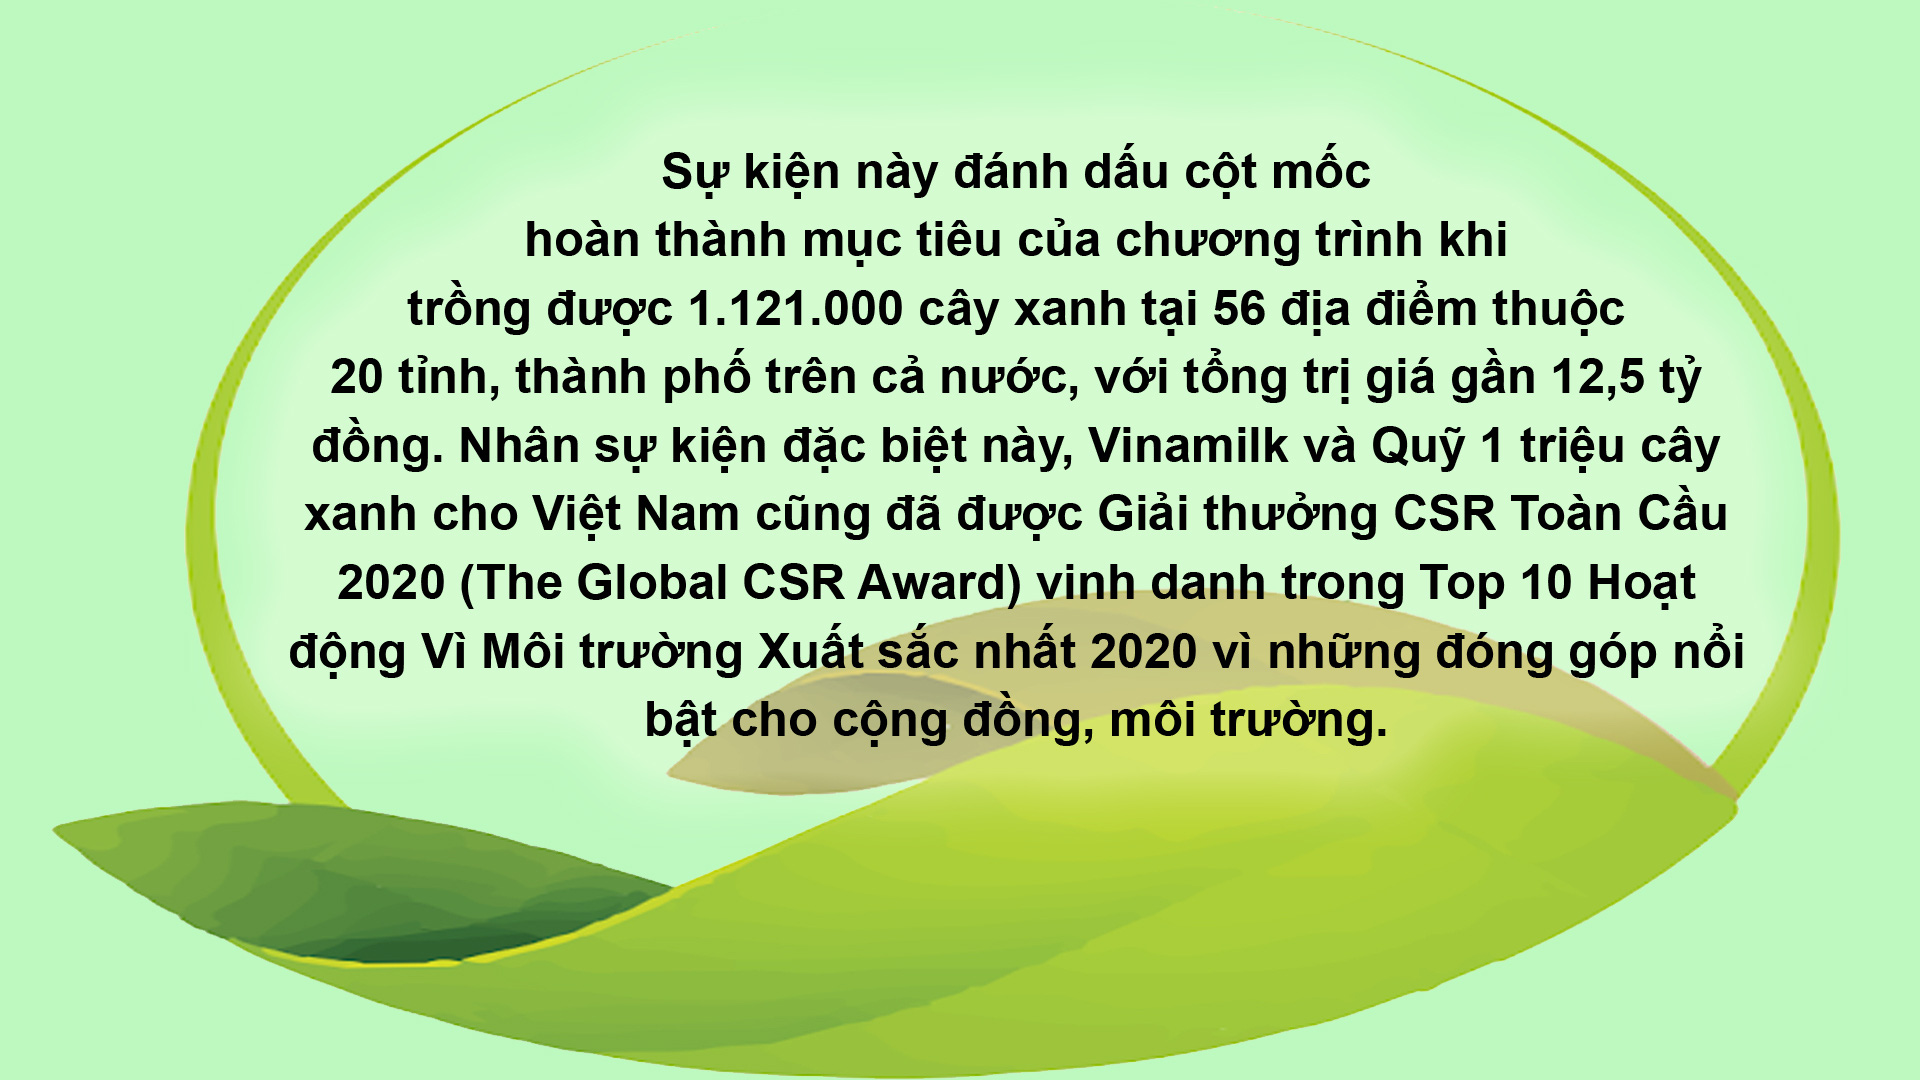 Vinamilk hoàn thành mục tiêu trồng hơn 1,1 triệu cây xanh cho Việt Nam năm 2020 - Ảnh 1.